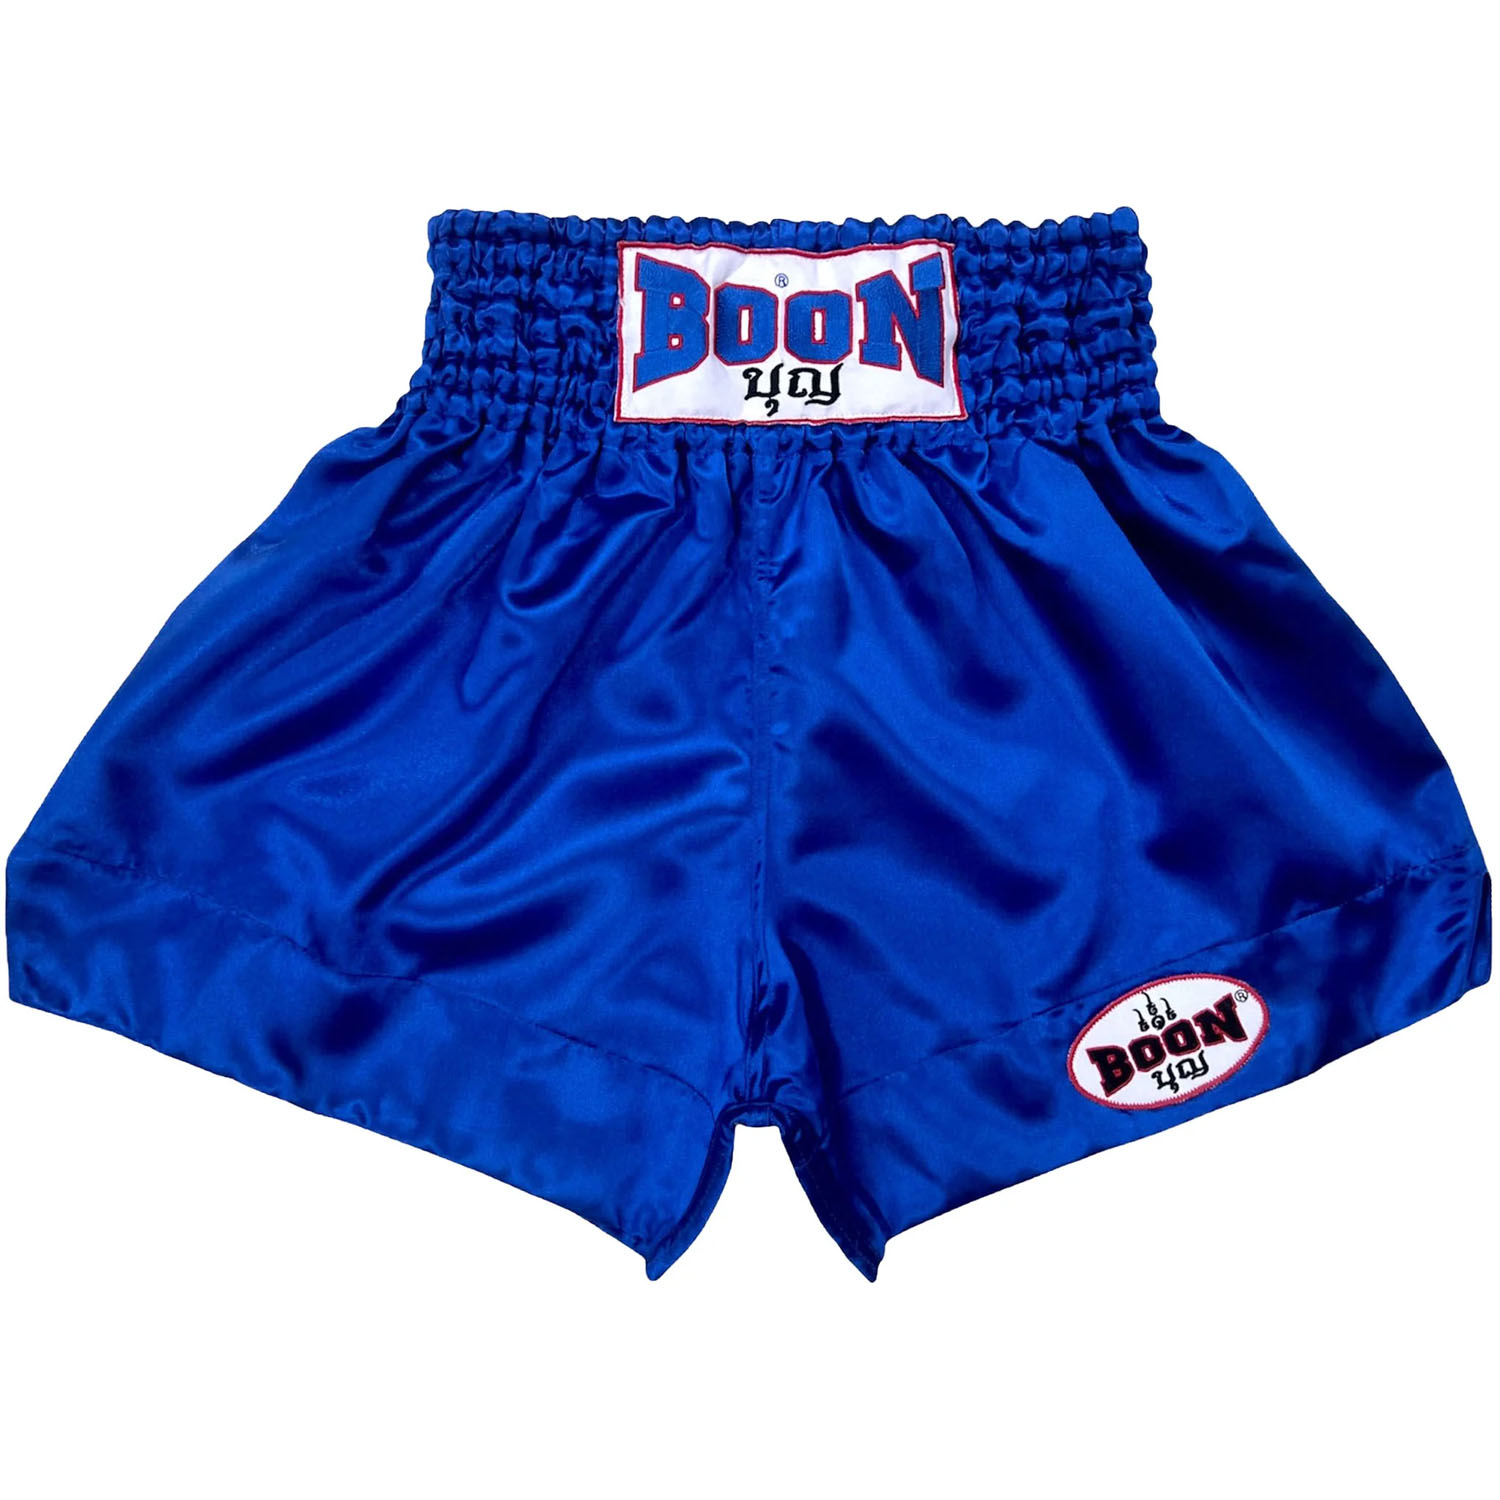 BOON Muay Thai Shorts, MT01, Plain, blau, XL